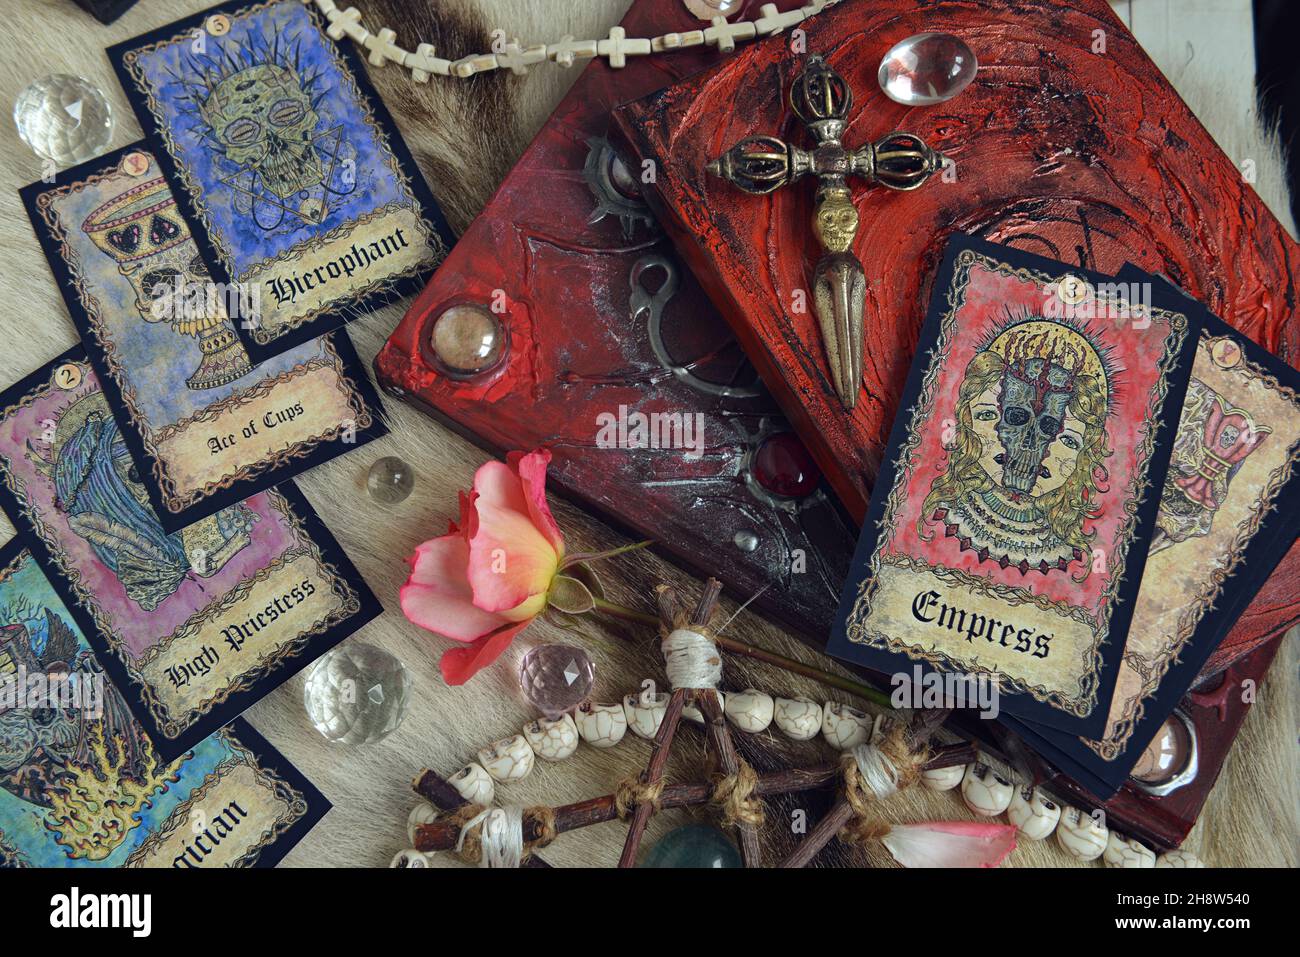 Stillleben mit Zauberbüchern, Tarot-Karten und rituellen Objekten auf dem Hexentisch. Esoterischer, gotischer und okkulter Hintergrund, mystisches Halloween-Konzept Stockfoto